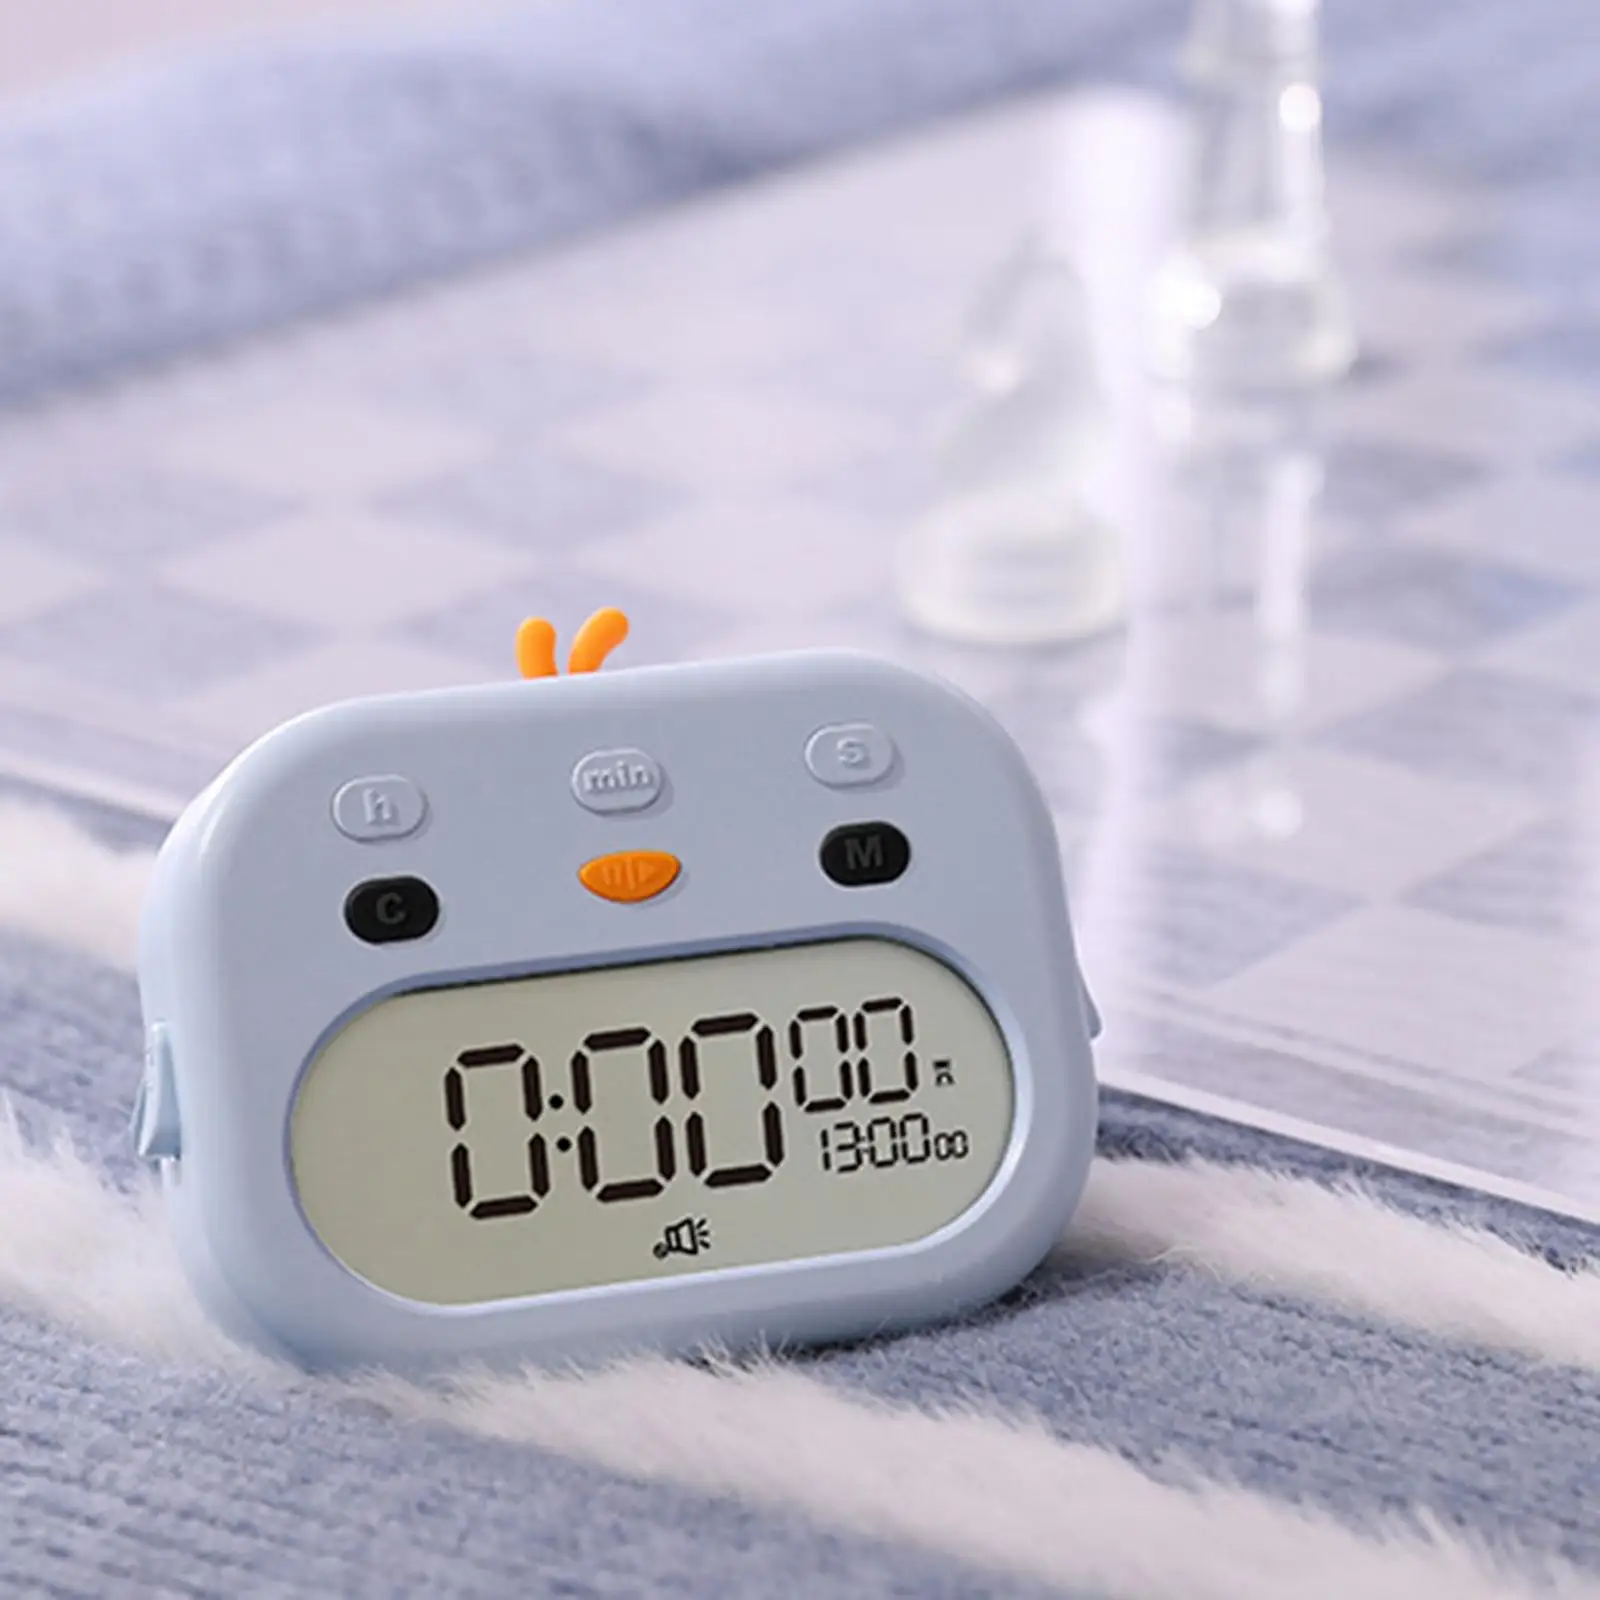 Digital Timer Clock Dual Alarm Time Management LED Display Adjustable Loud Alarm Low Energy for Cooking Bedside Table Homework